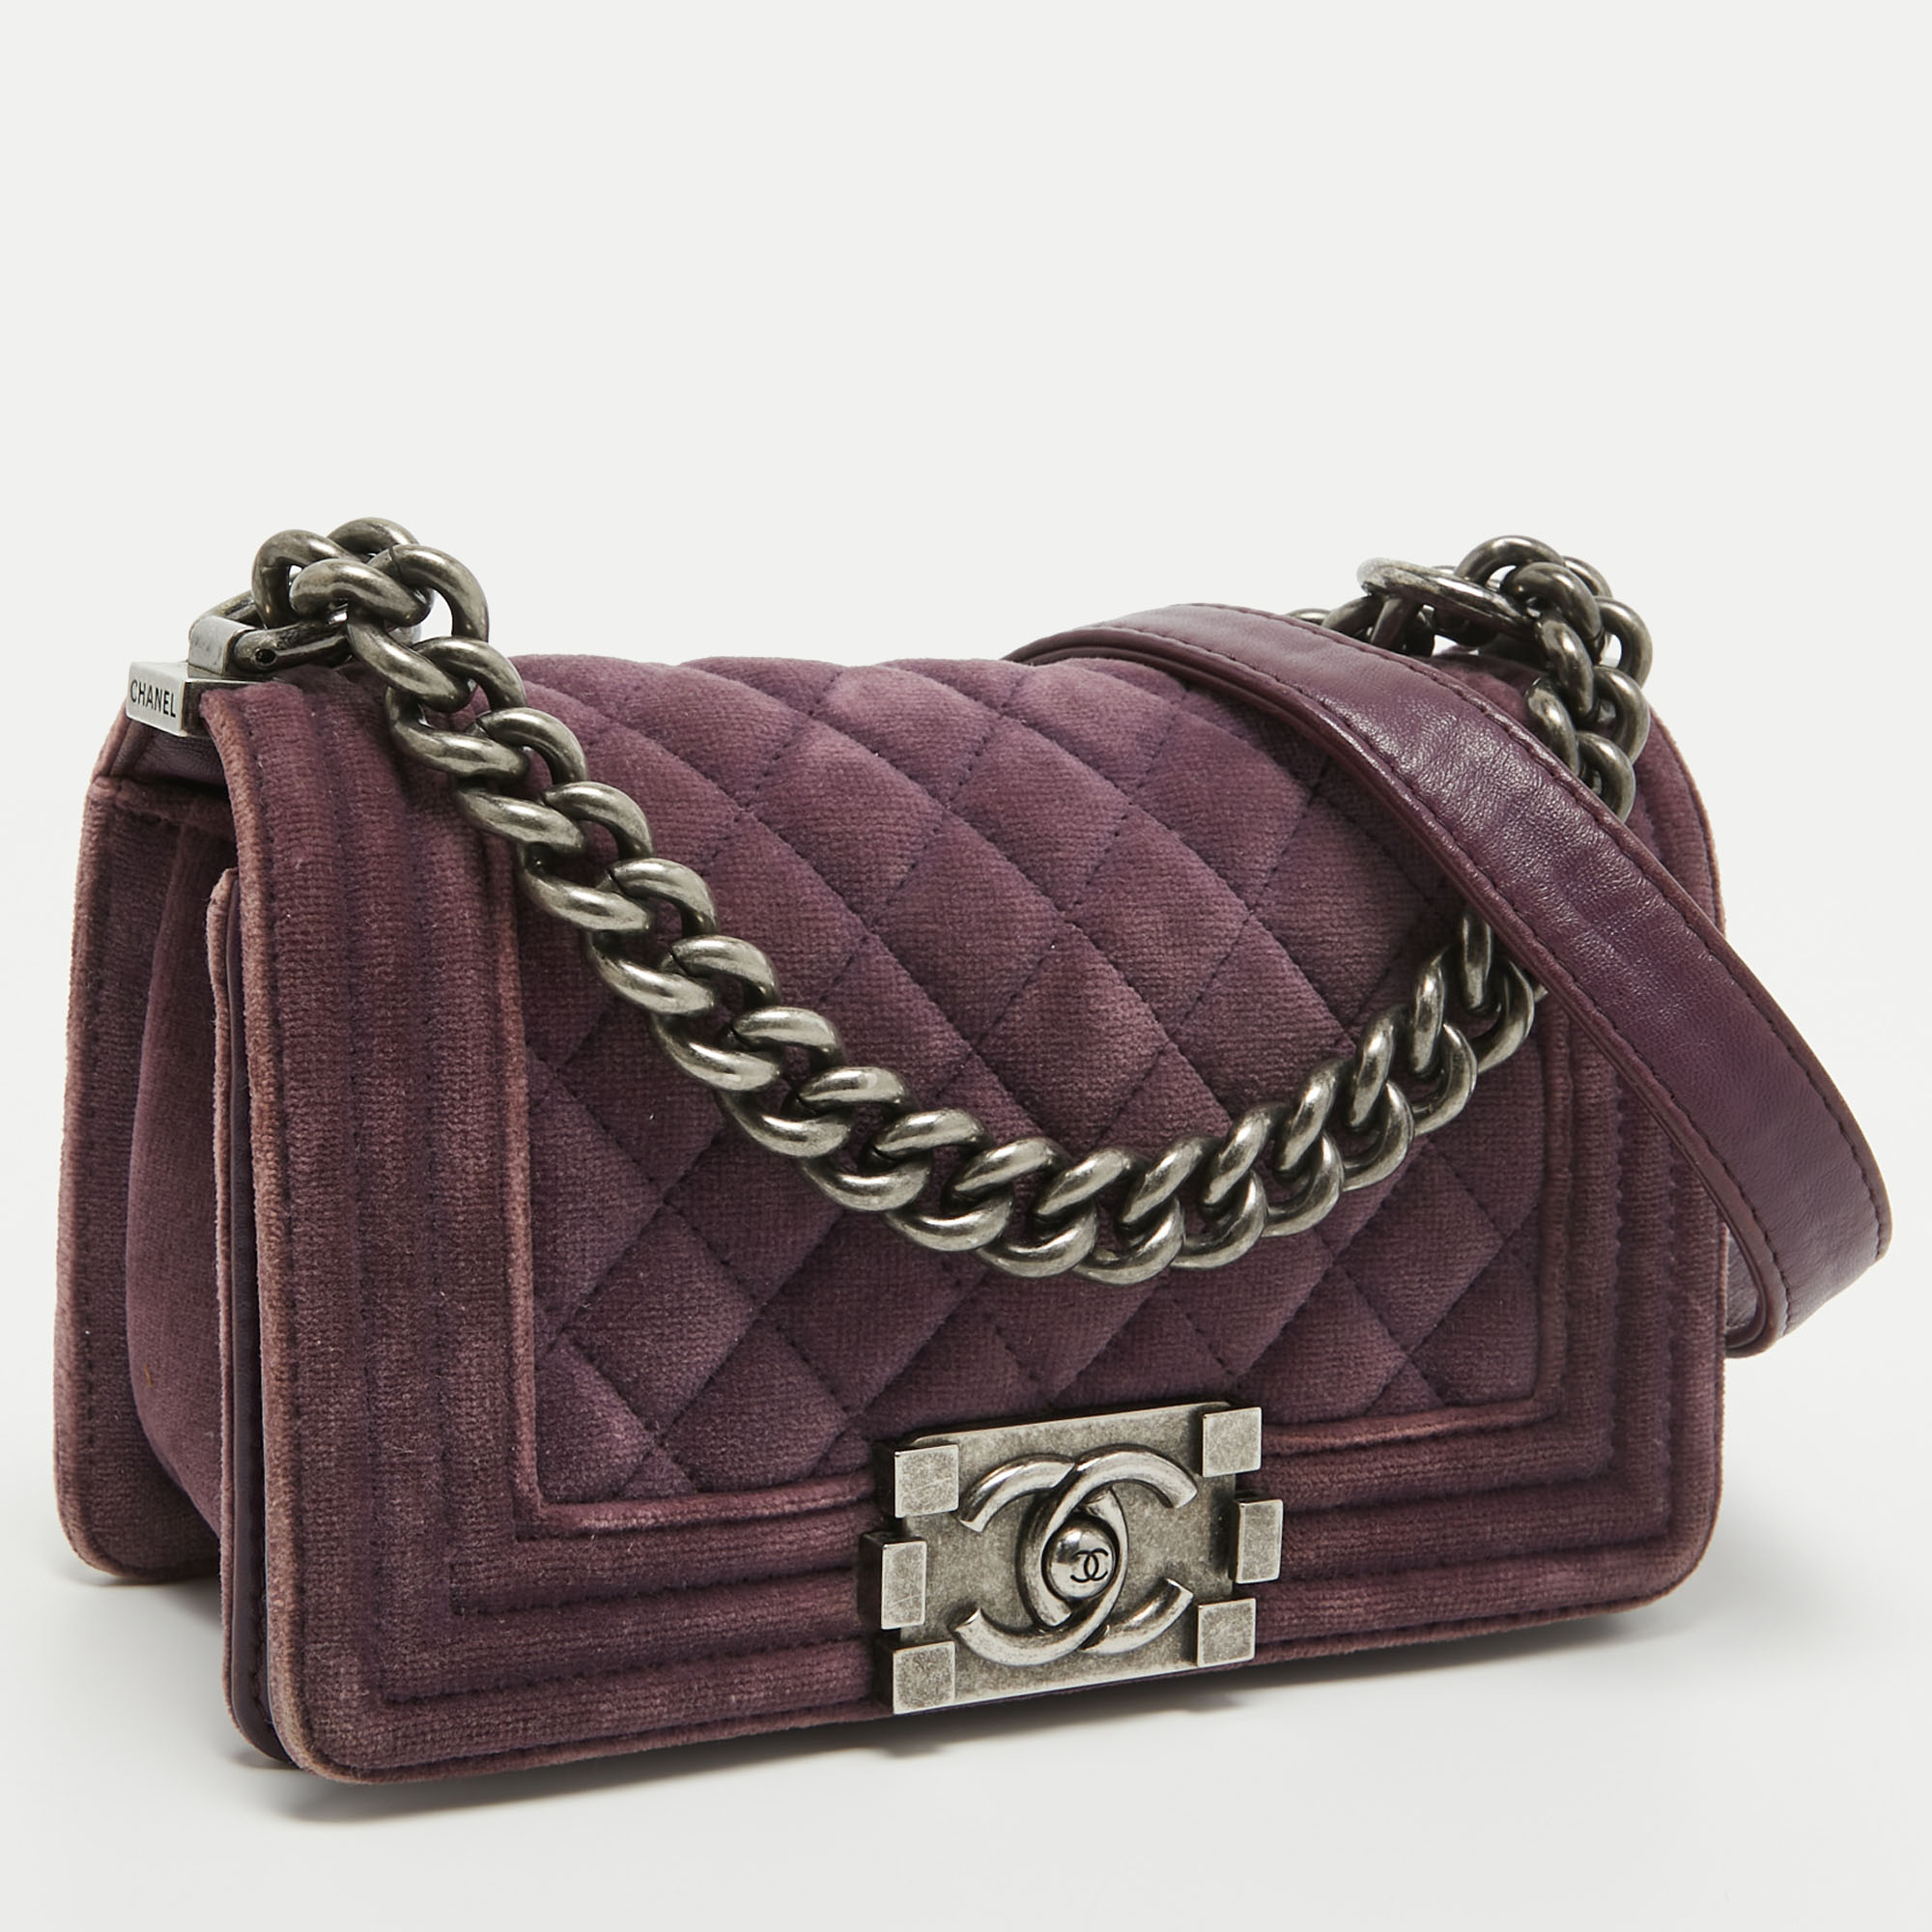 Chanel Purple Velvet Small Boy Bag